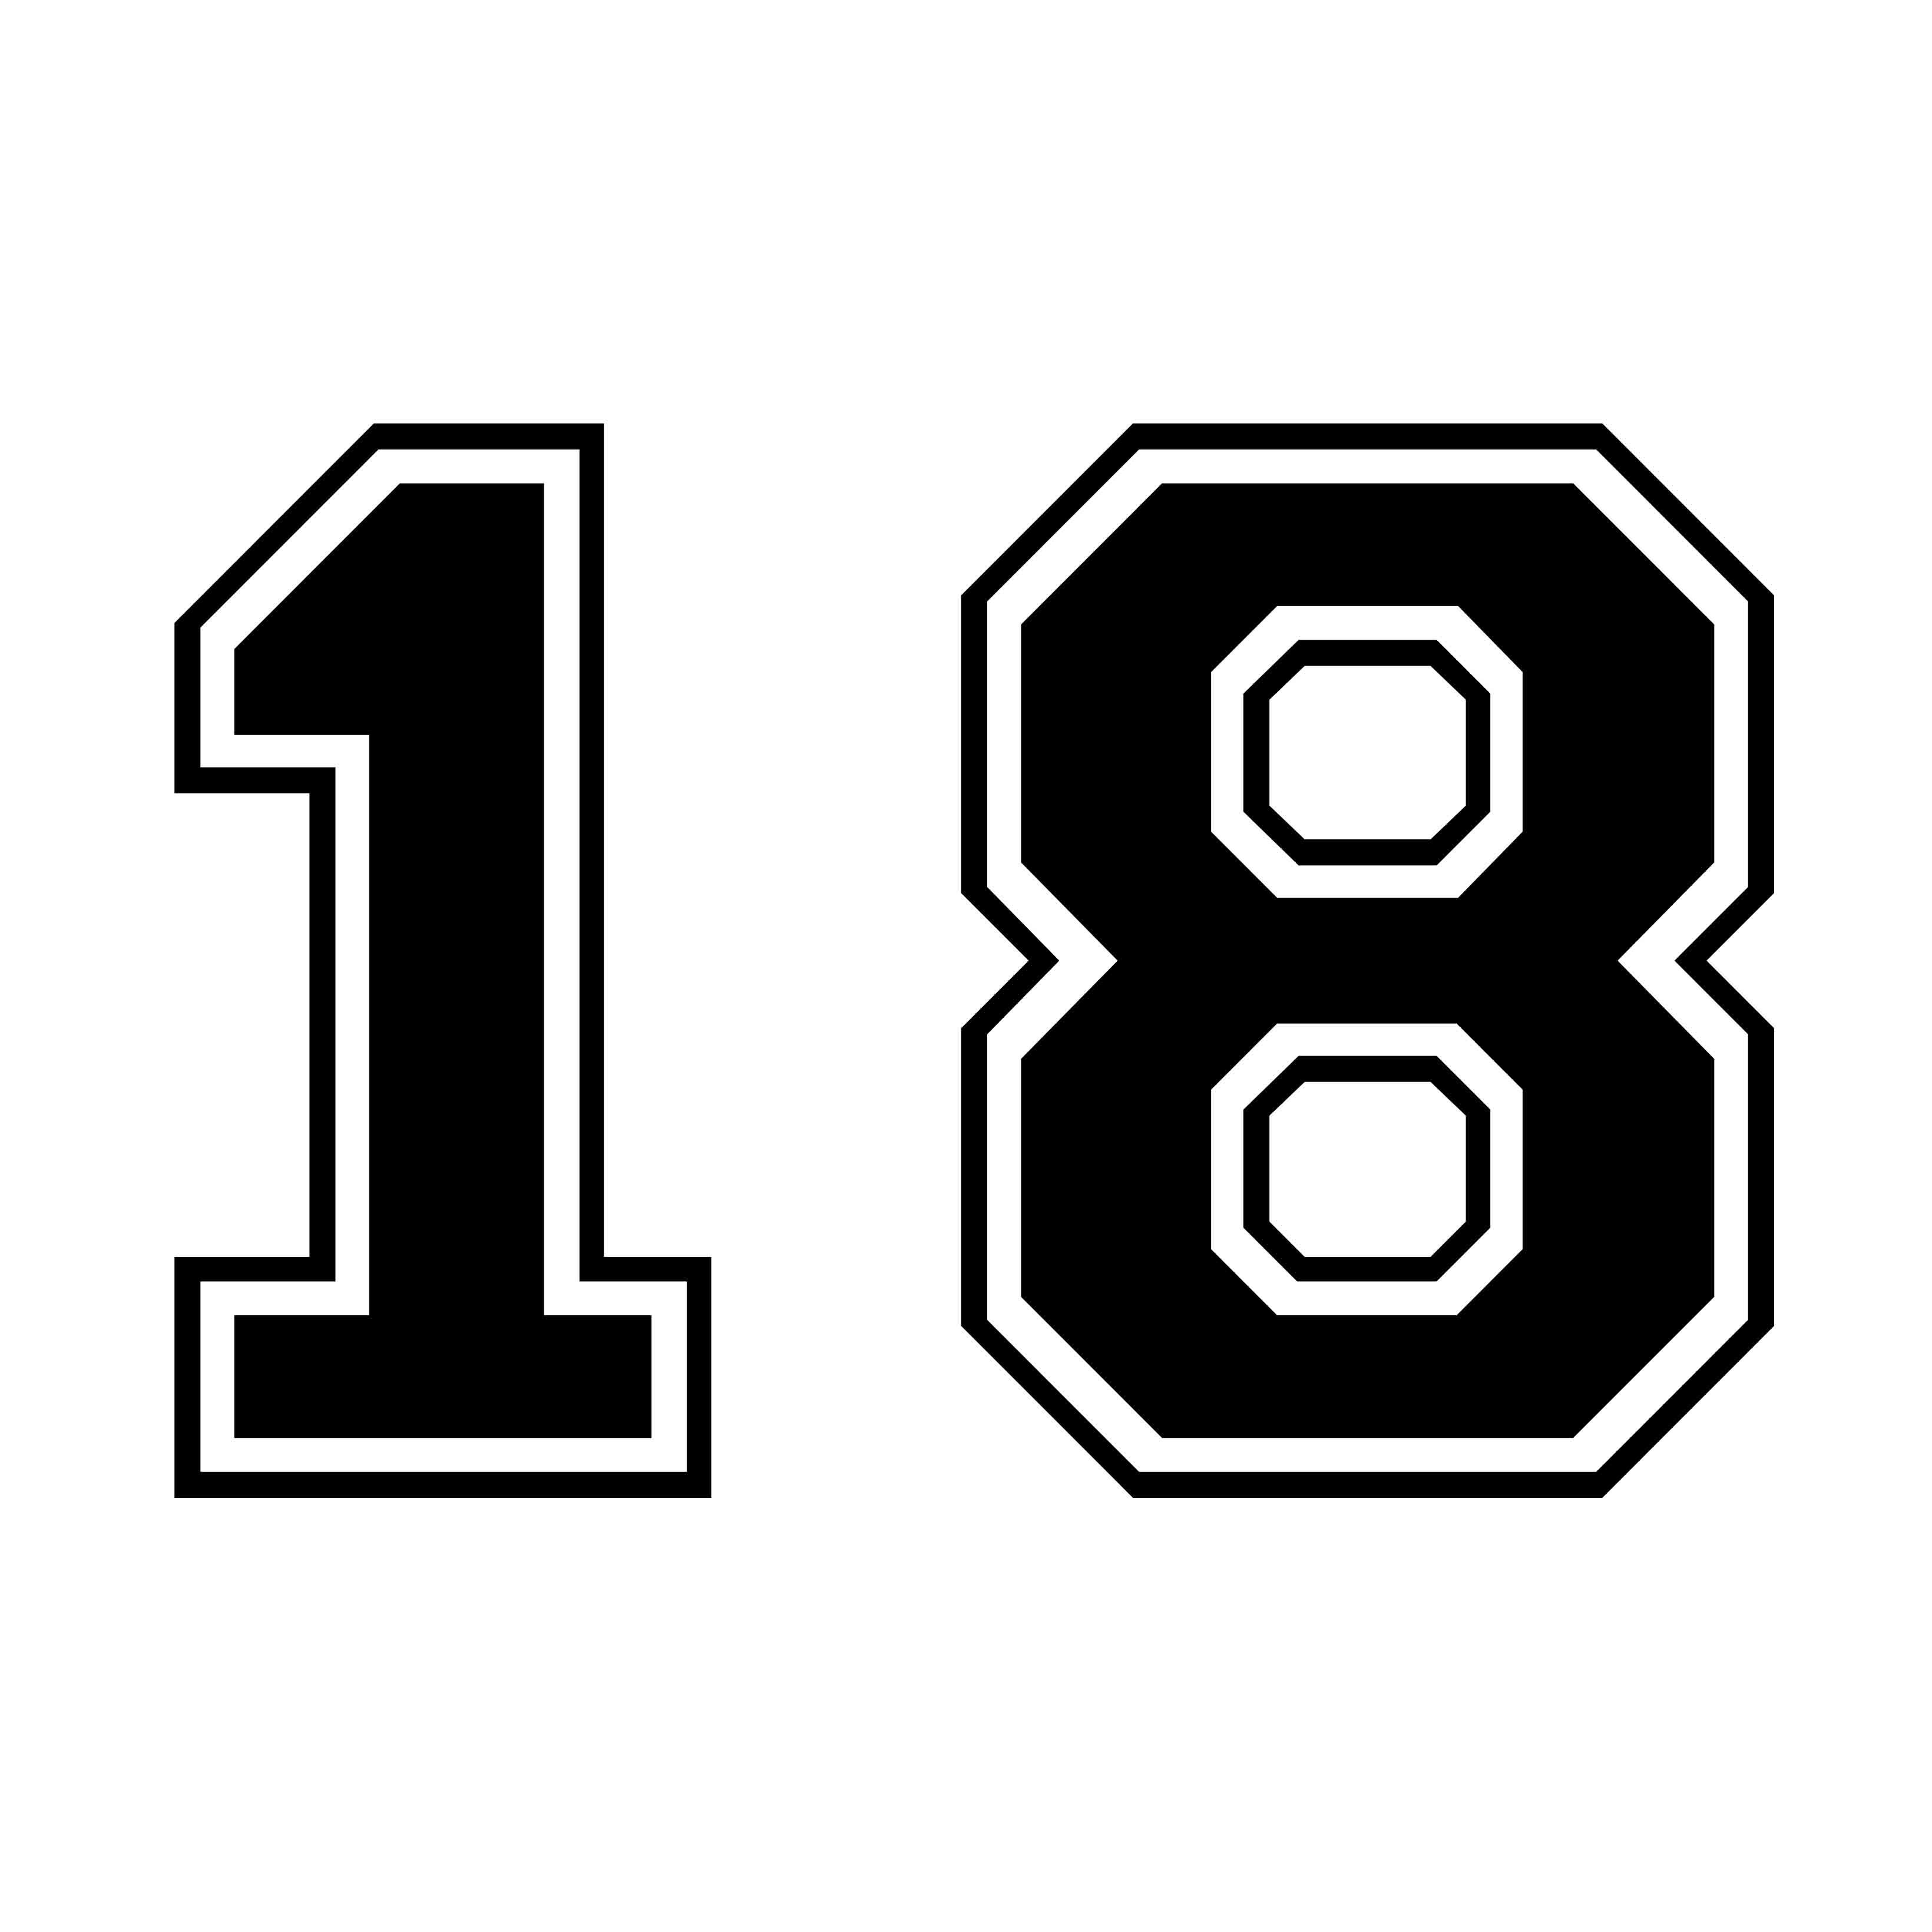 18番